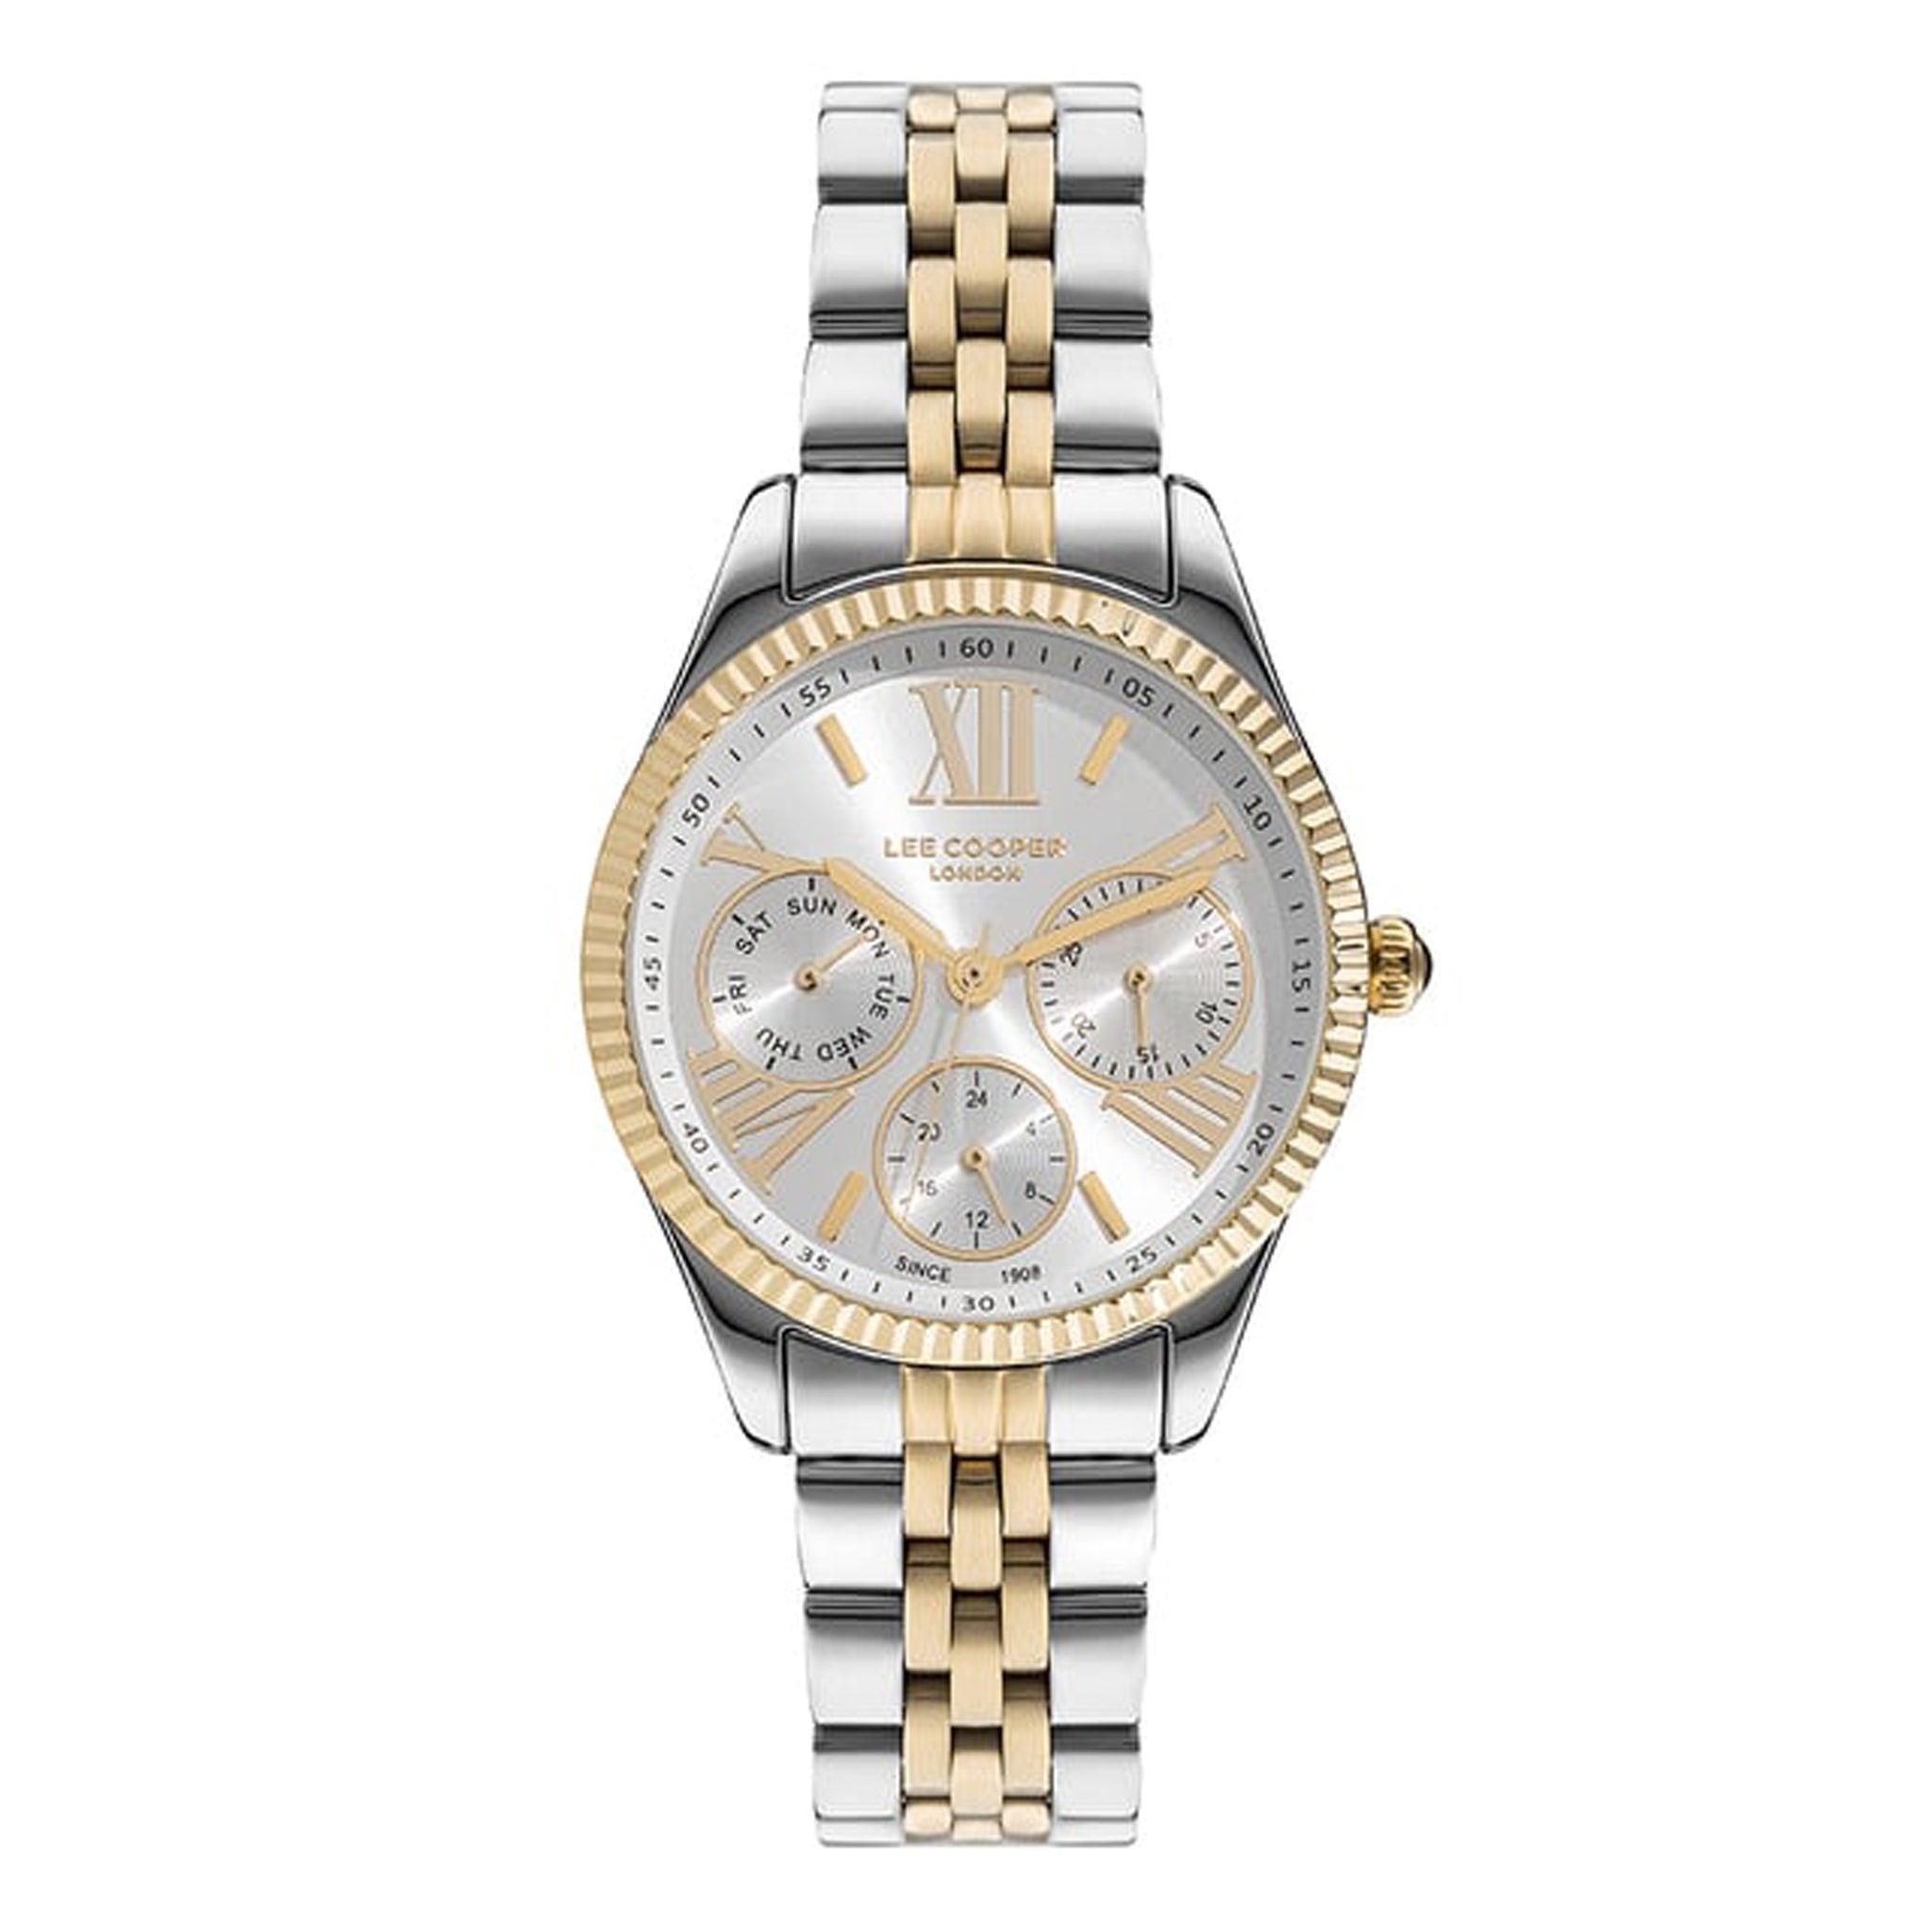 ساعة يد نسائية - ذهبي و فضي و مينا باللون الذهبي و الأبيض - بحزام ذهبي و فضي من الفولاذ المقاوم للصدأ لي كوبر Lee Cooper Women's Multi Function Watch